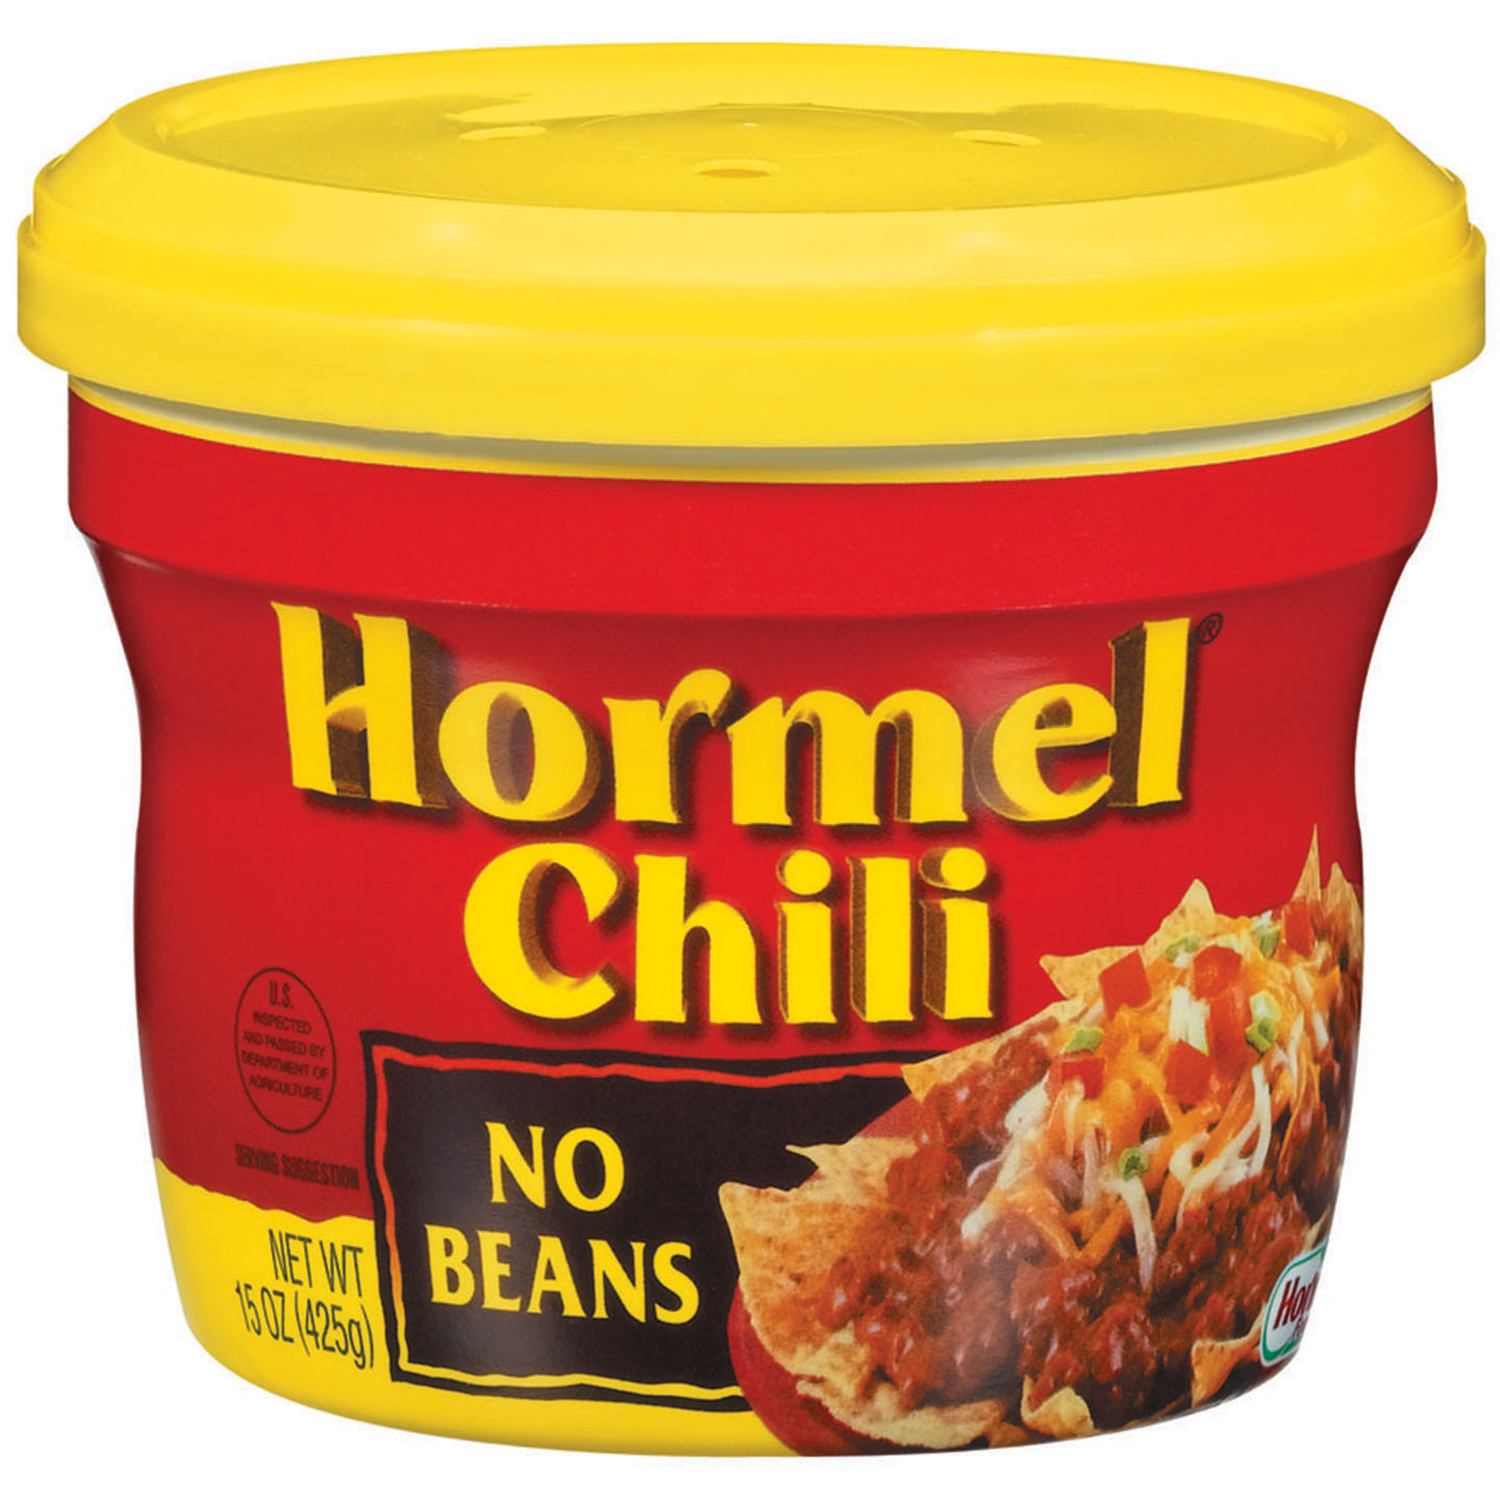 Hormel Chili, No Beans, 15 oz (425 g)